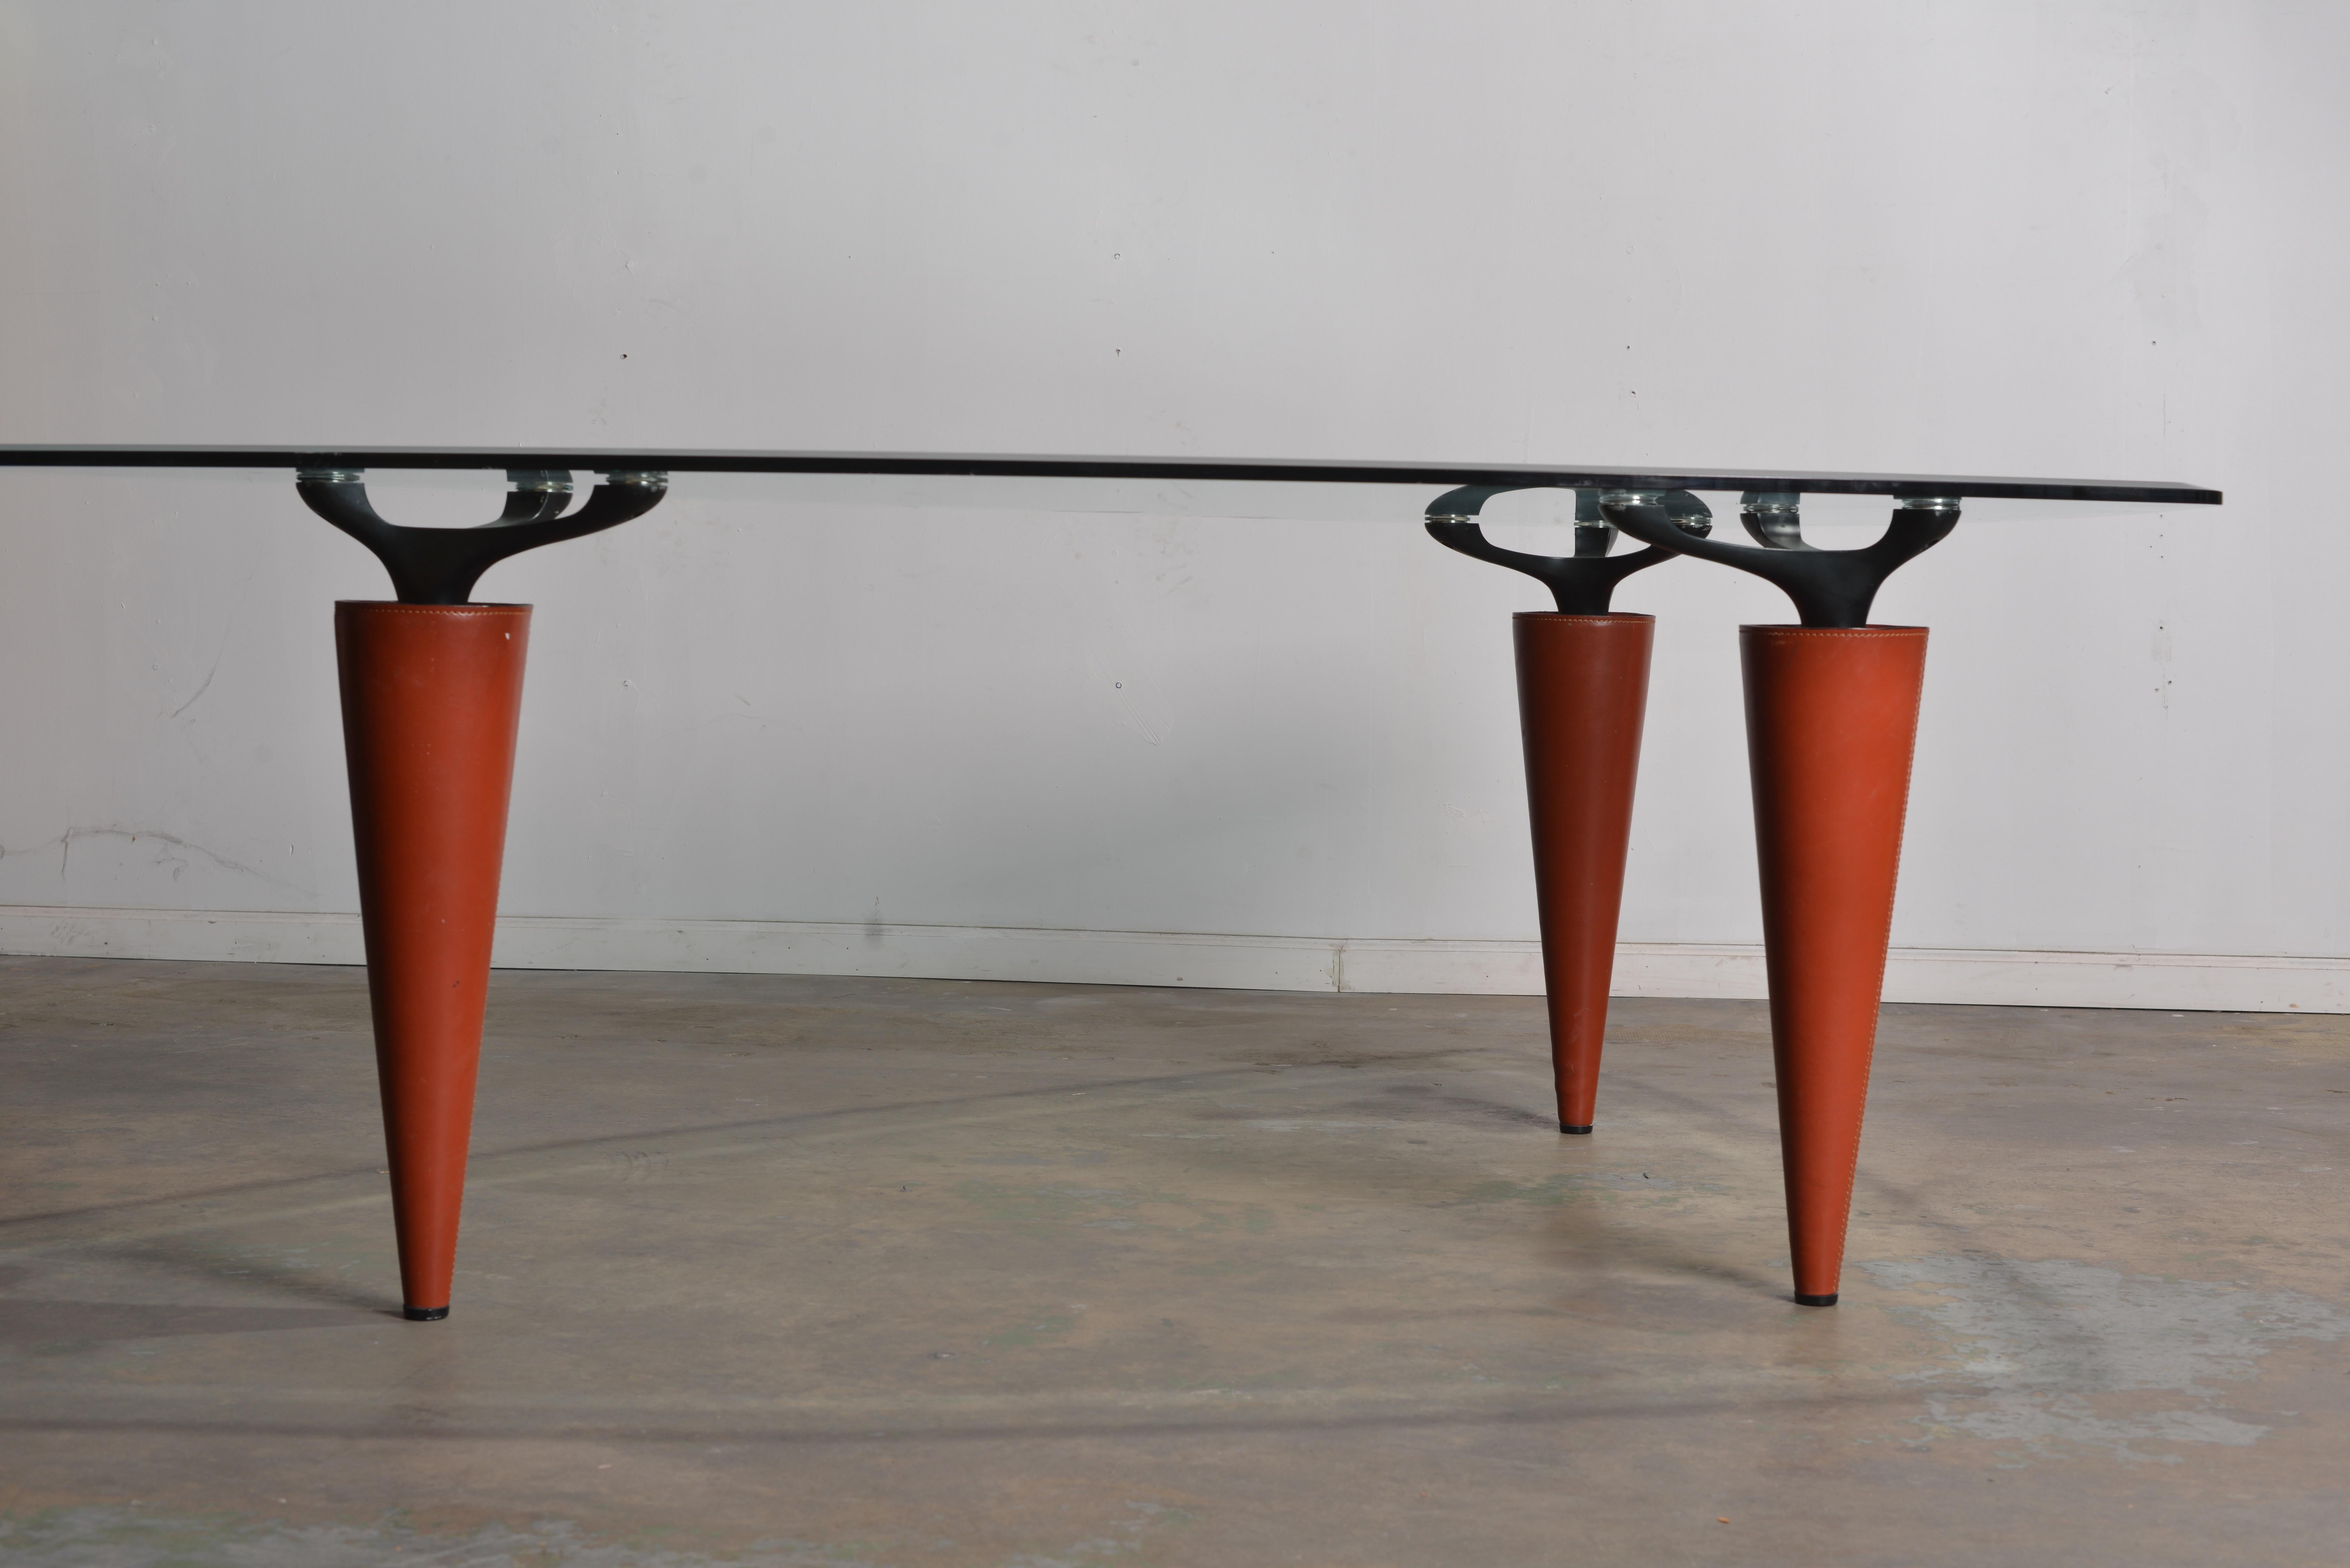  Isao Hosoe Oskar 705 Scalene Triangular Table by Cassina For Sale 11